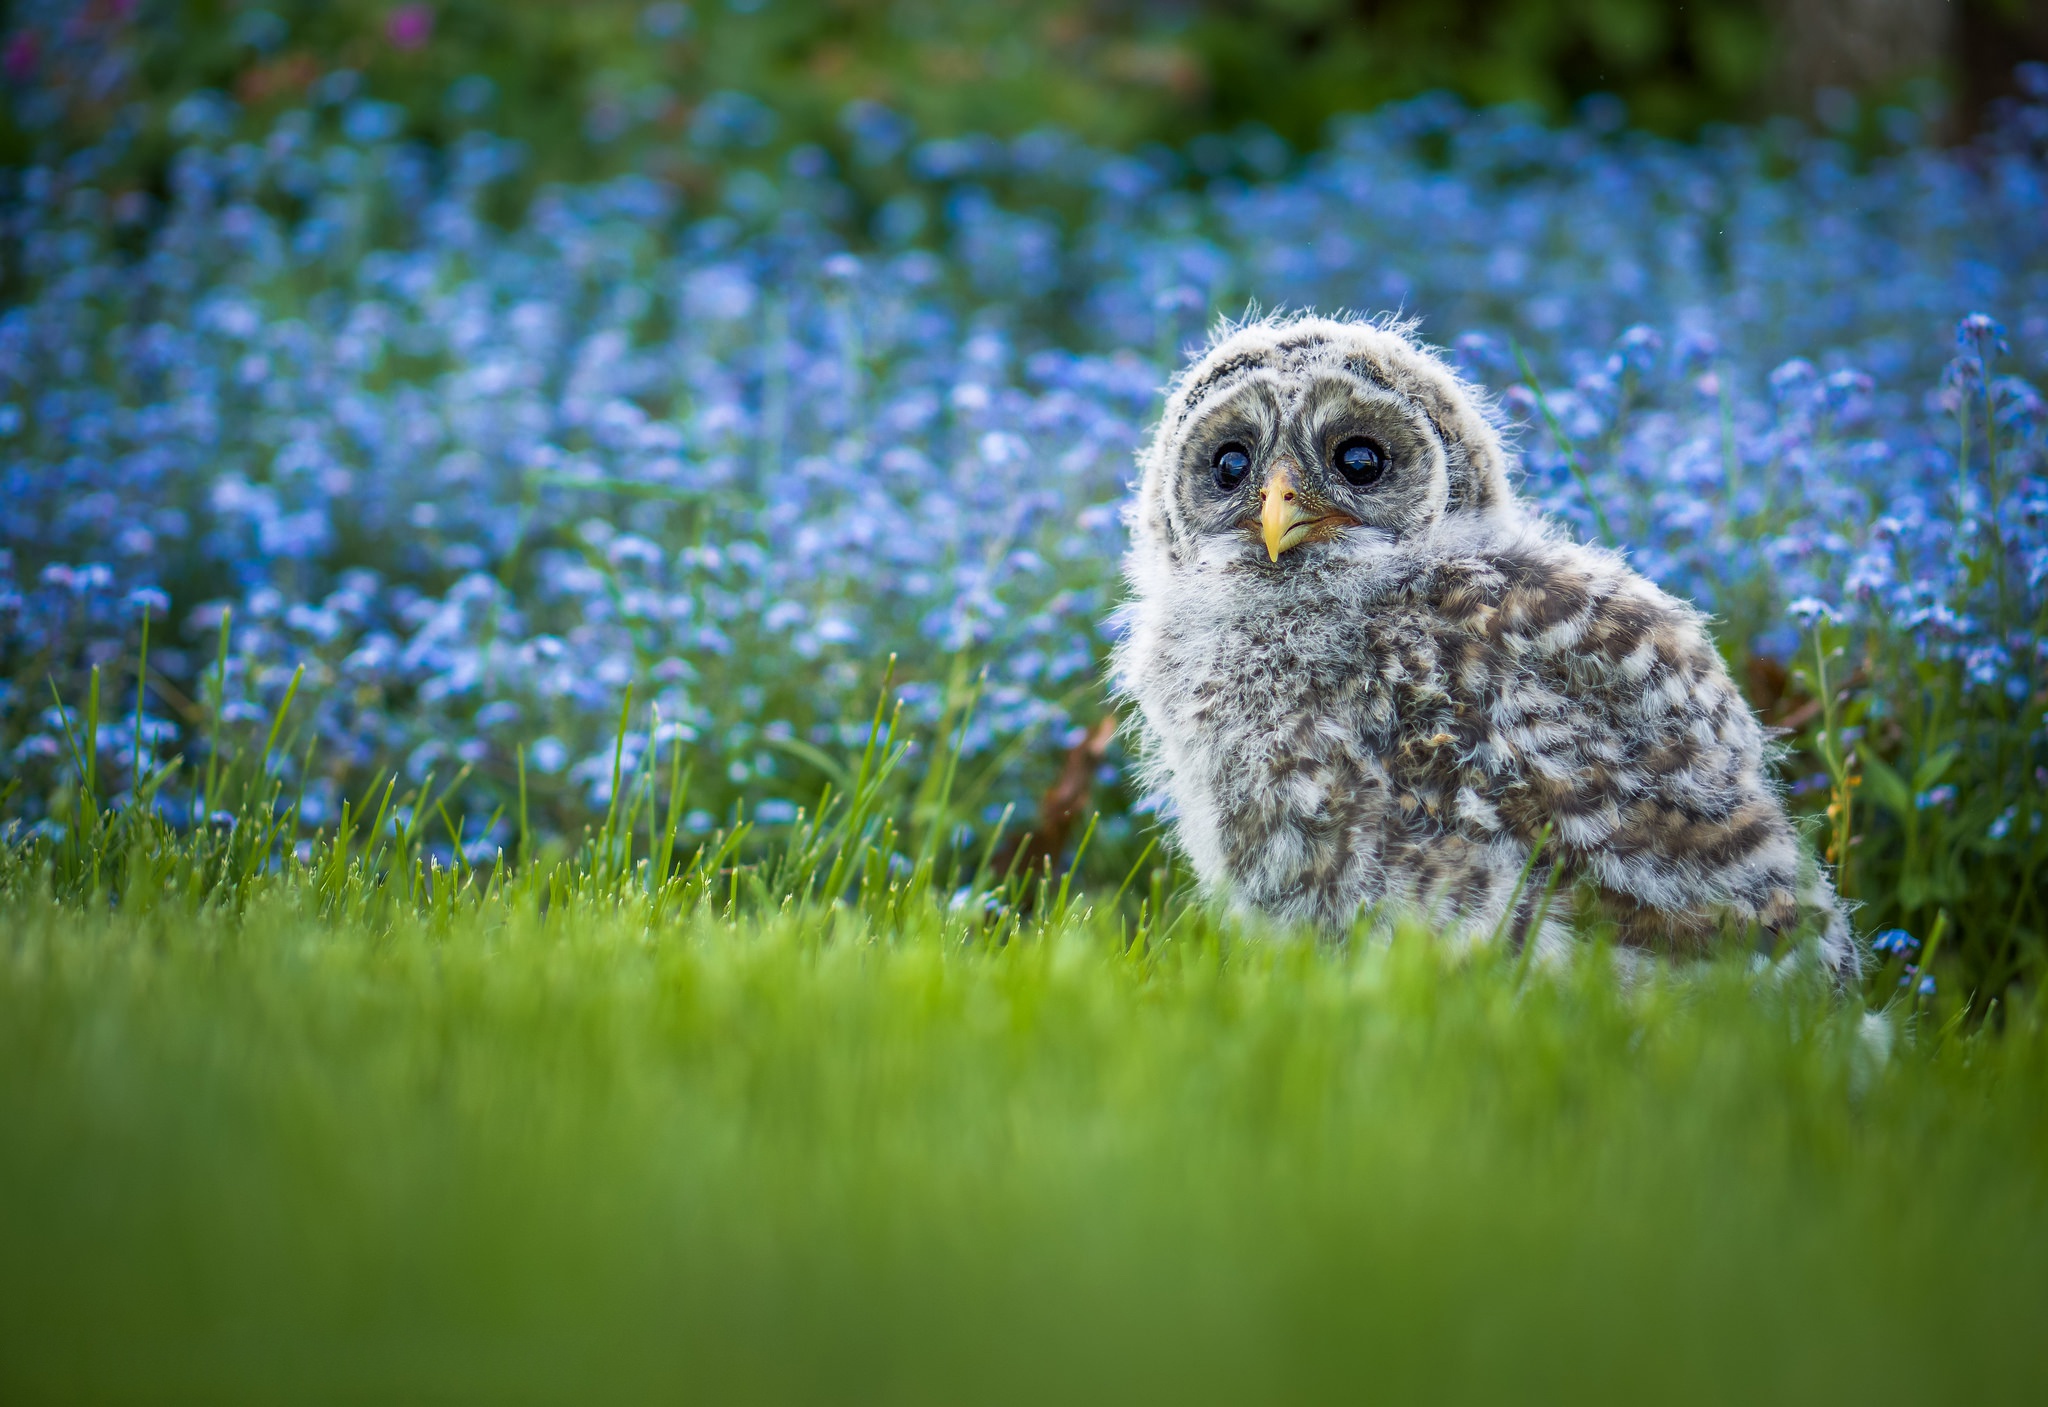 Barred Owl Owl Bird Grass Blue Flower Blur 2048x1407